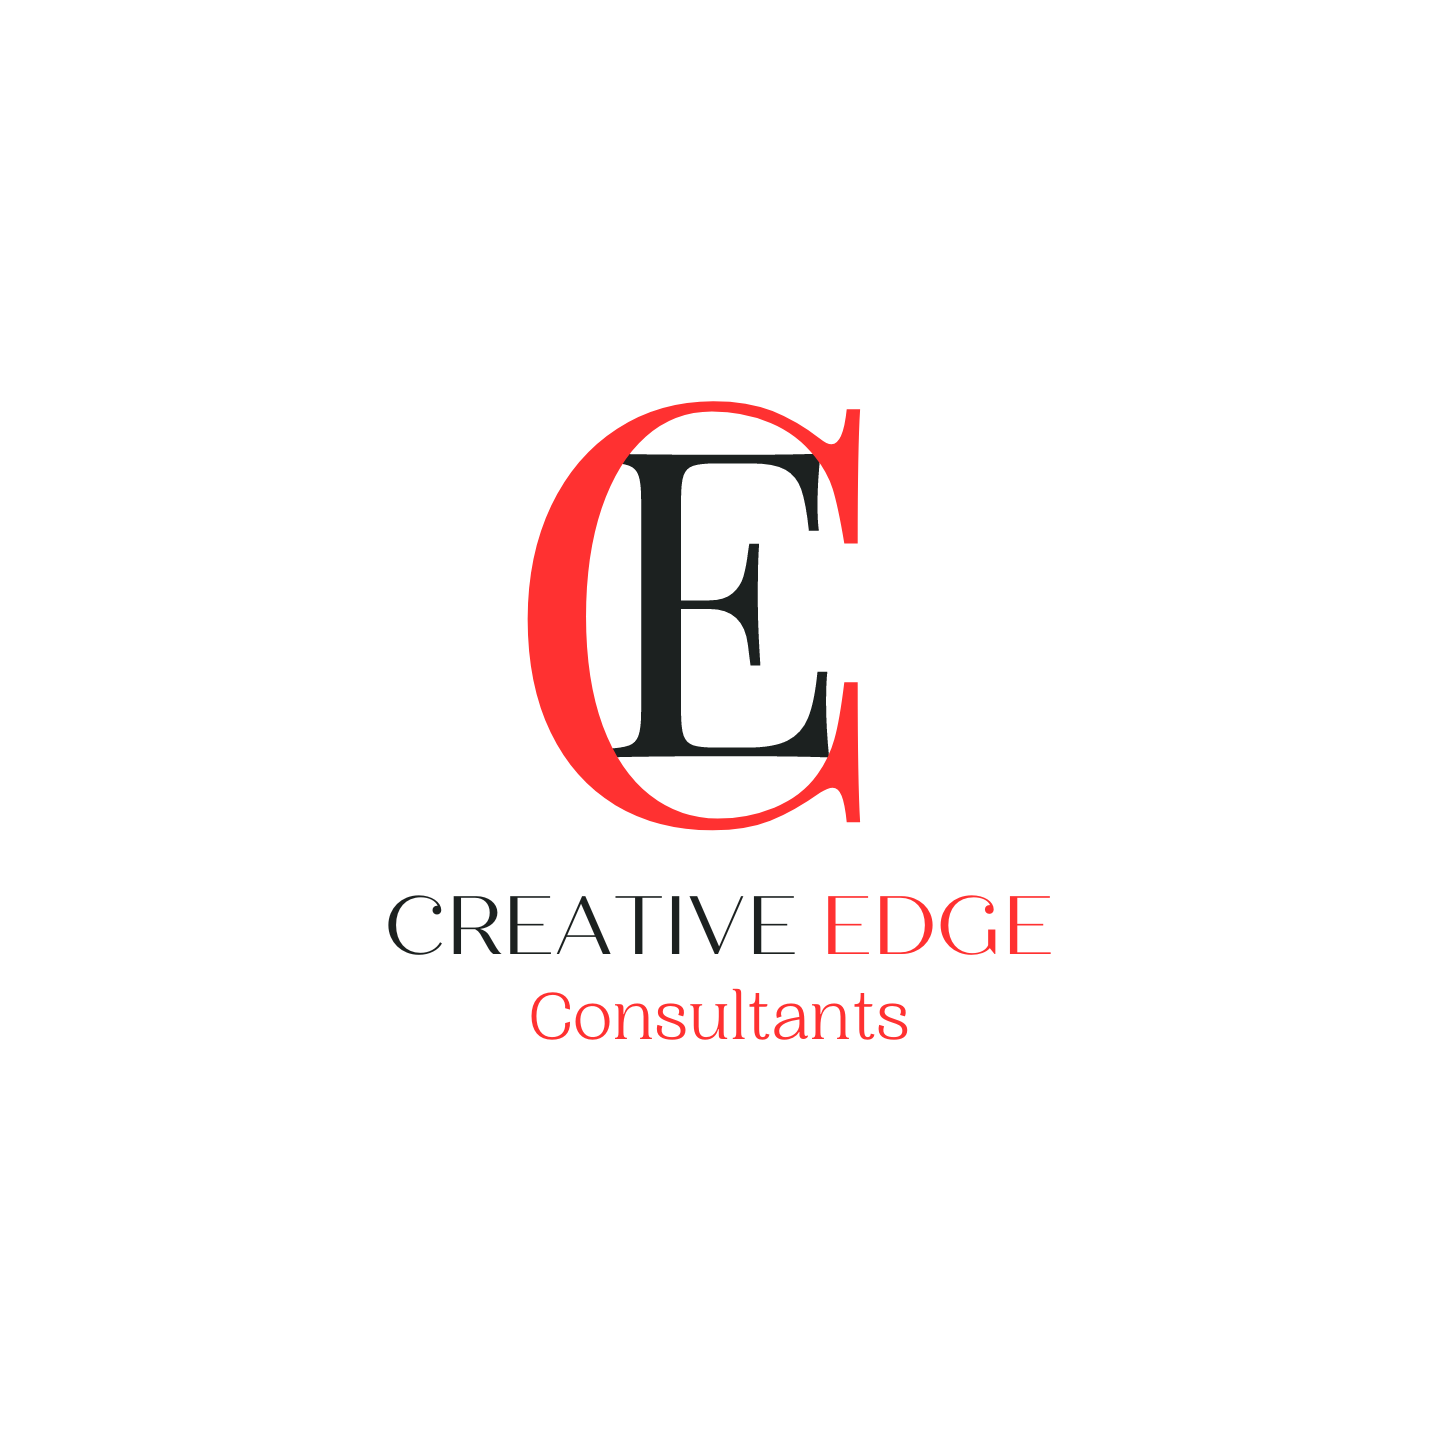 Creative Edge Consultants